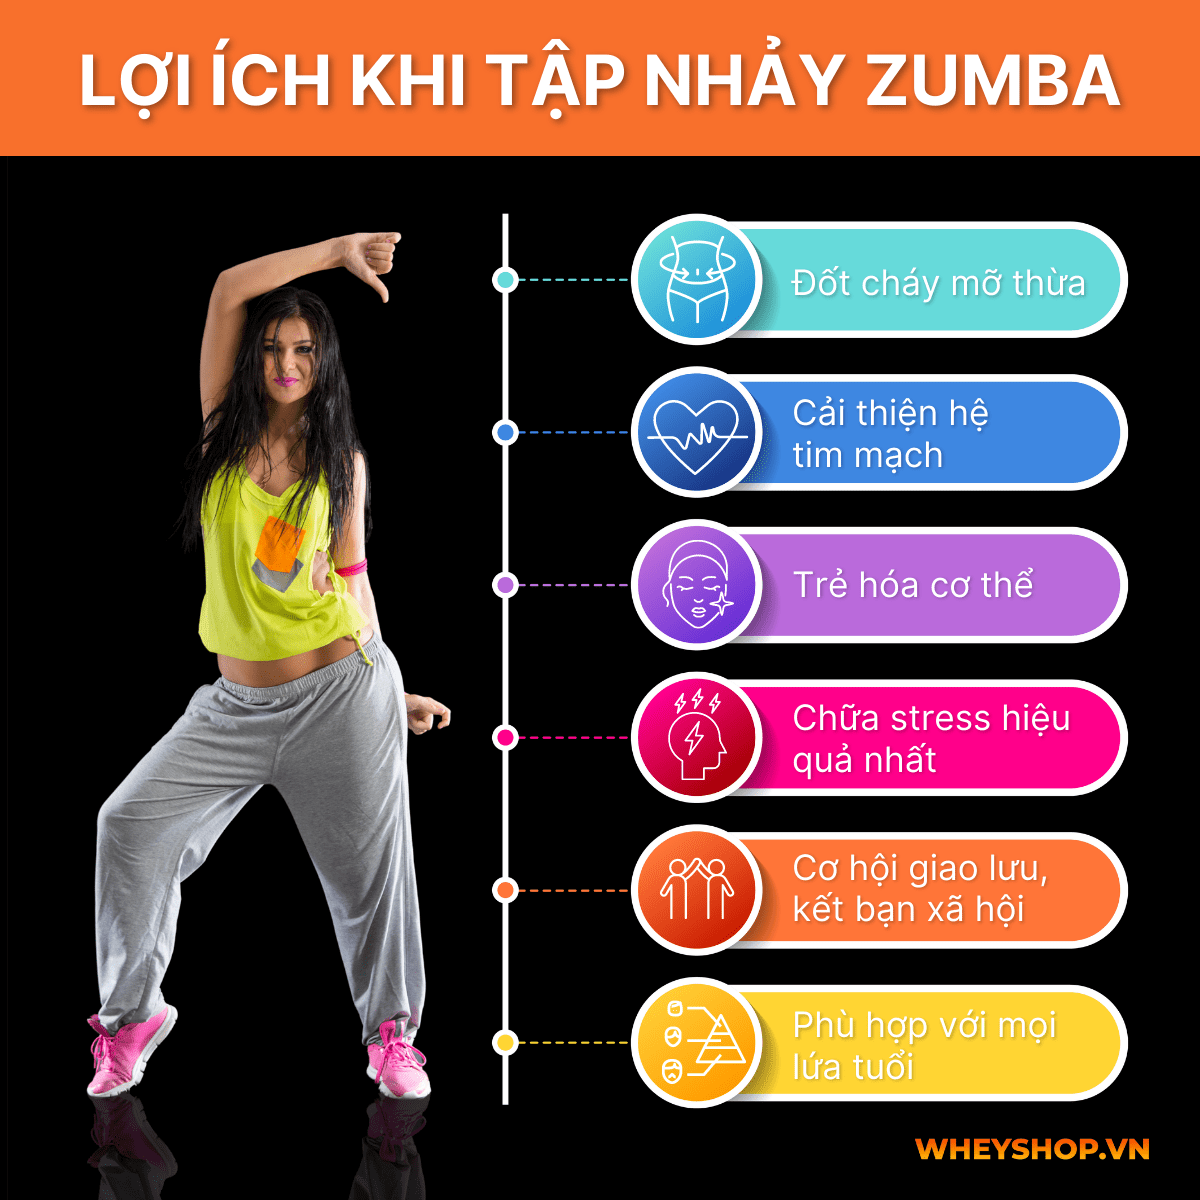 Zumba là một trong những điệu nhảy phổ biến nhất của Mỹ La-tinh. Nếu muốn học nhảy Zumba cơ bản, bạn có thể tự tập Zumba cơ bản tại nhà hoặc đến các phòng...